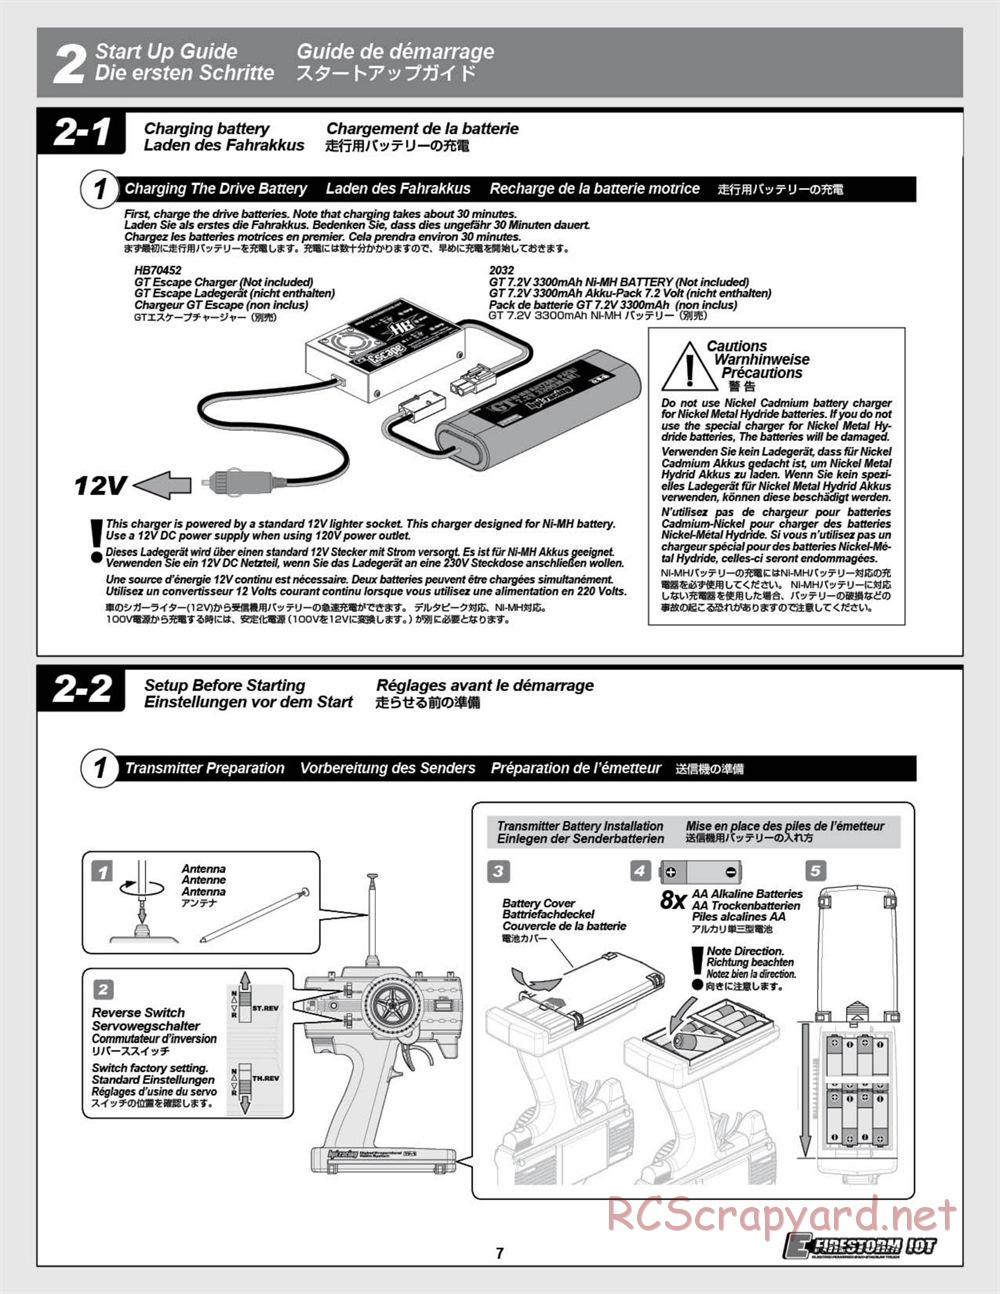 HPI - E-Firestorm 10T - Manual - Page 7